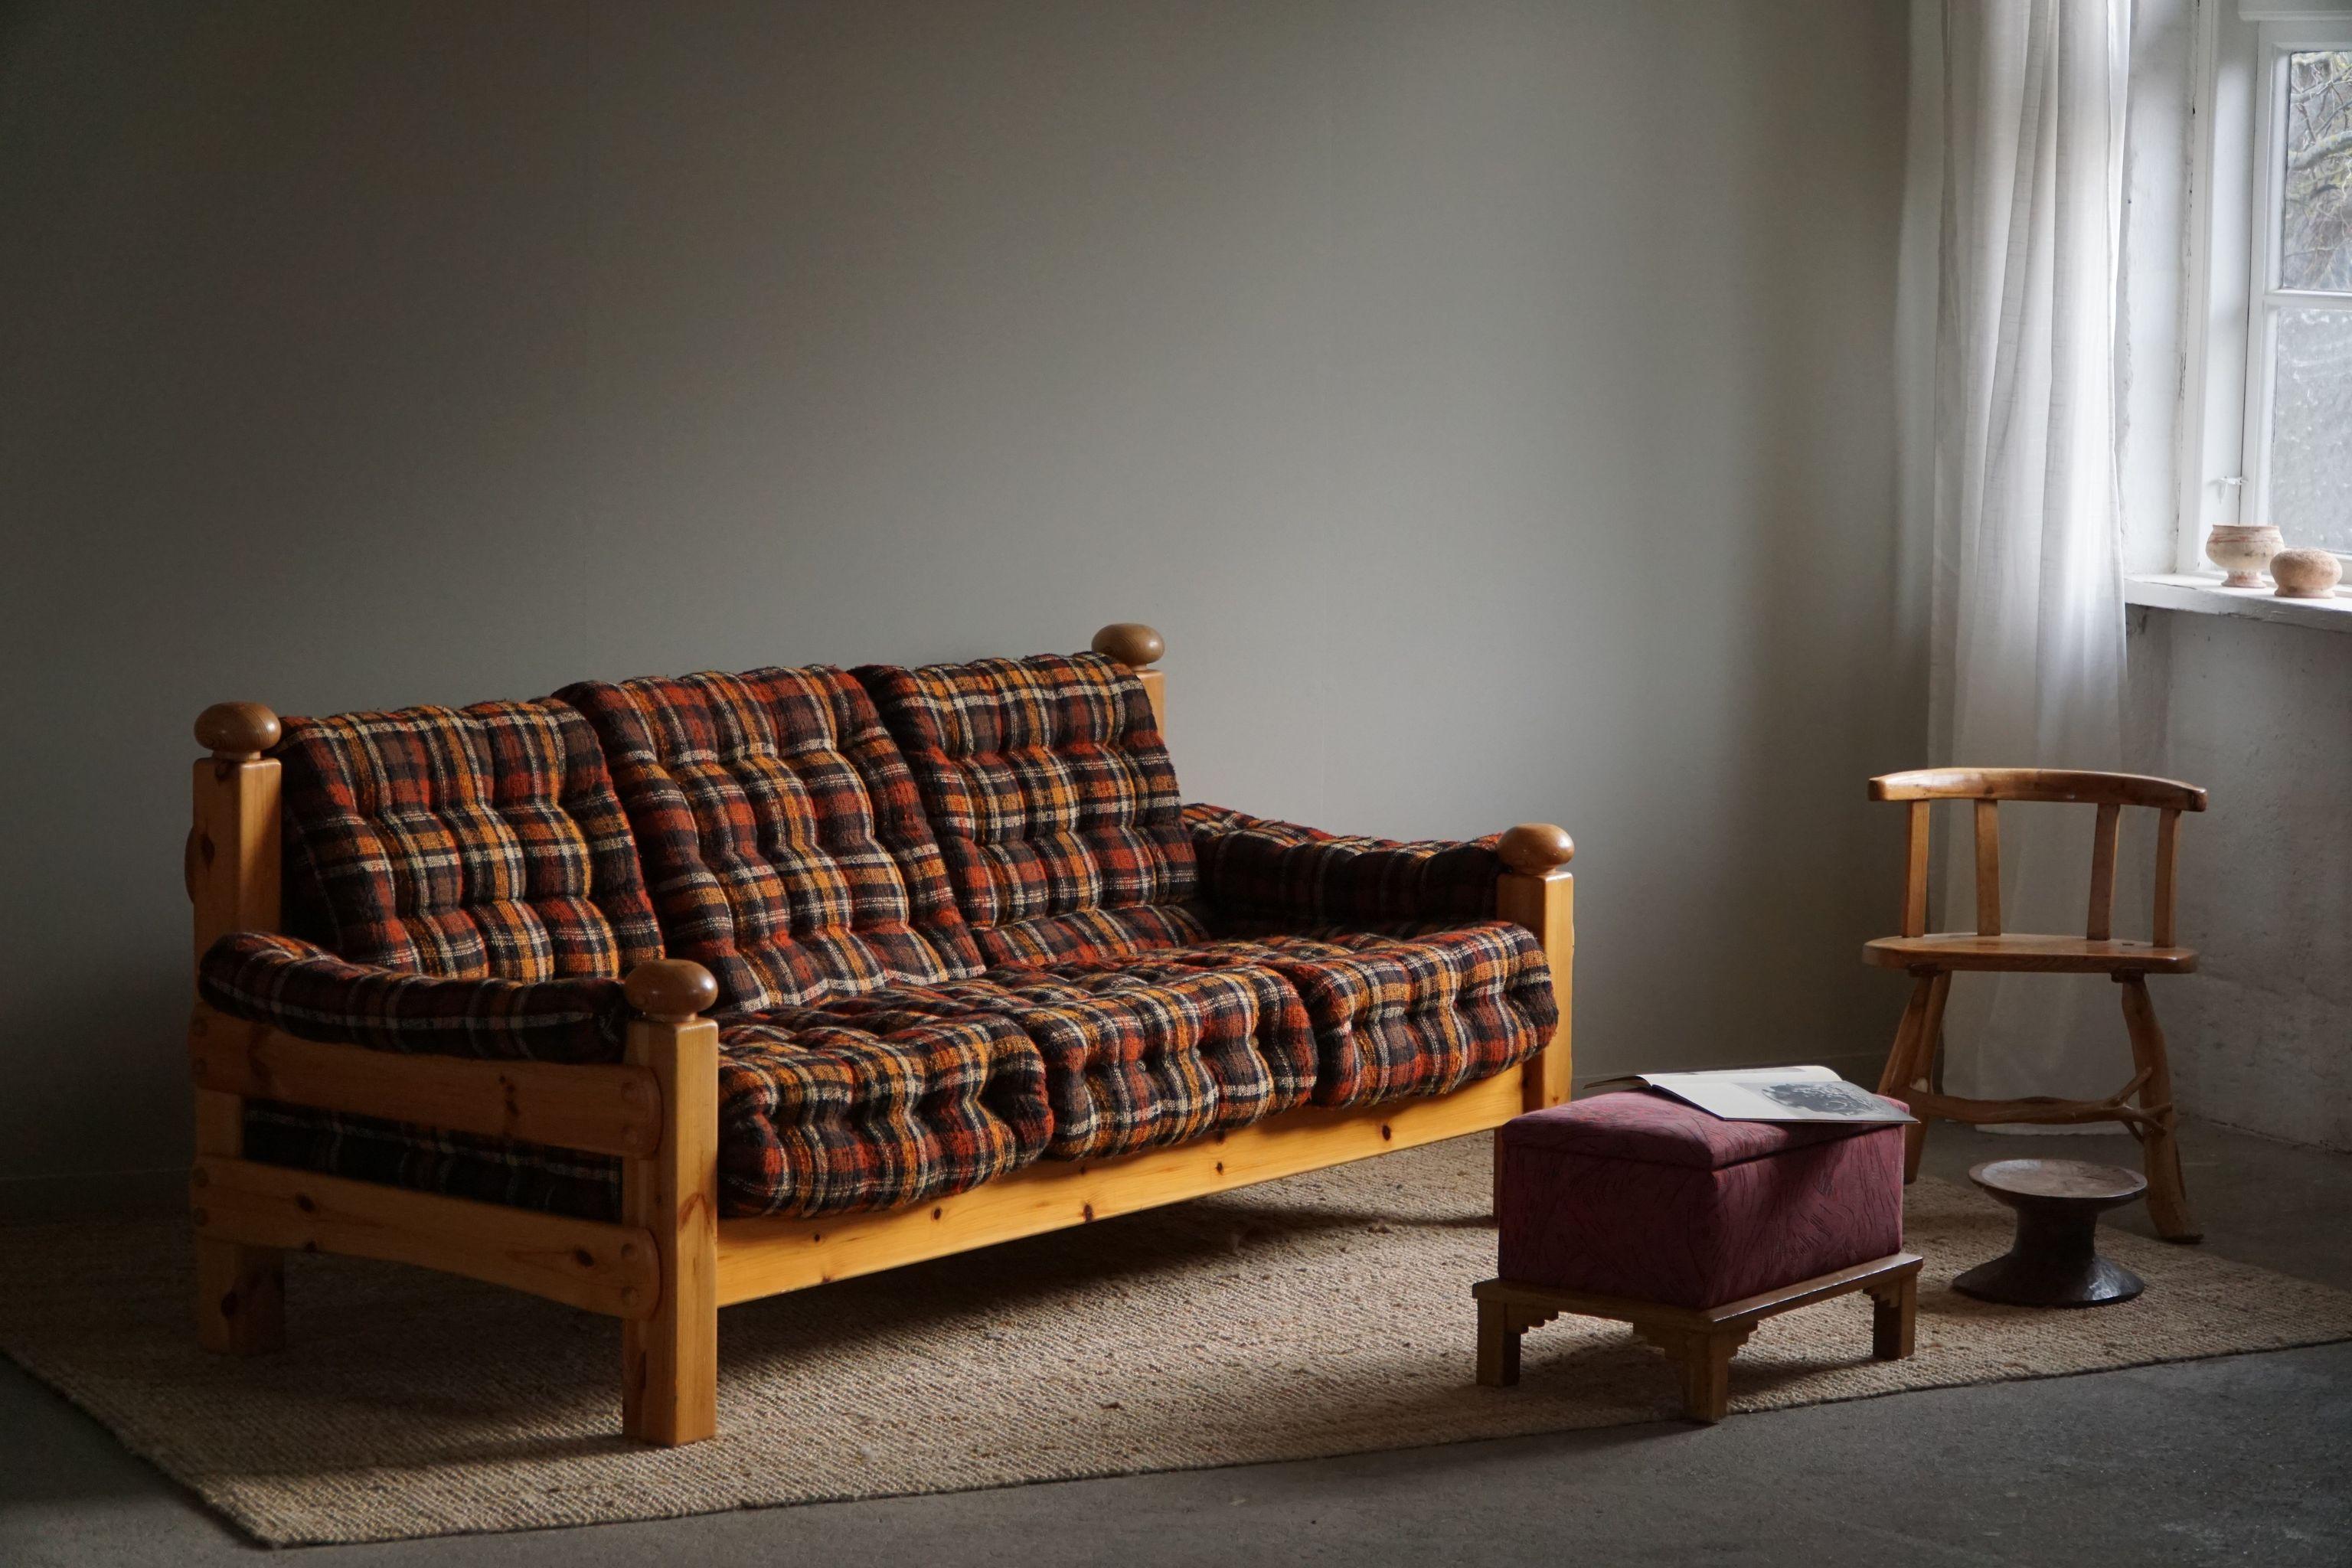 Un confortable canapé trois places, tapissé d'un tissu vintage. 
Attribué au designer suédois Sven Larsson. Fabriqué dans les années 1970.
Ce canapé solide s'harmonise avec de nombreux styles d'intérieur. Une décoration d'intérieur moderne,